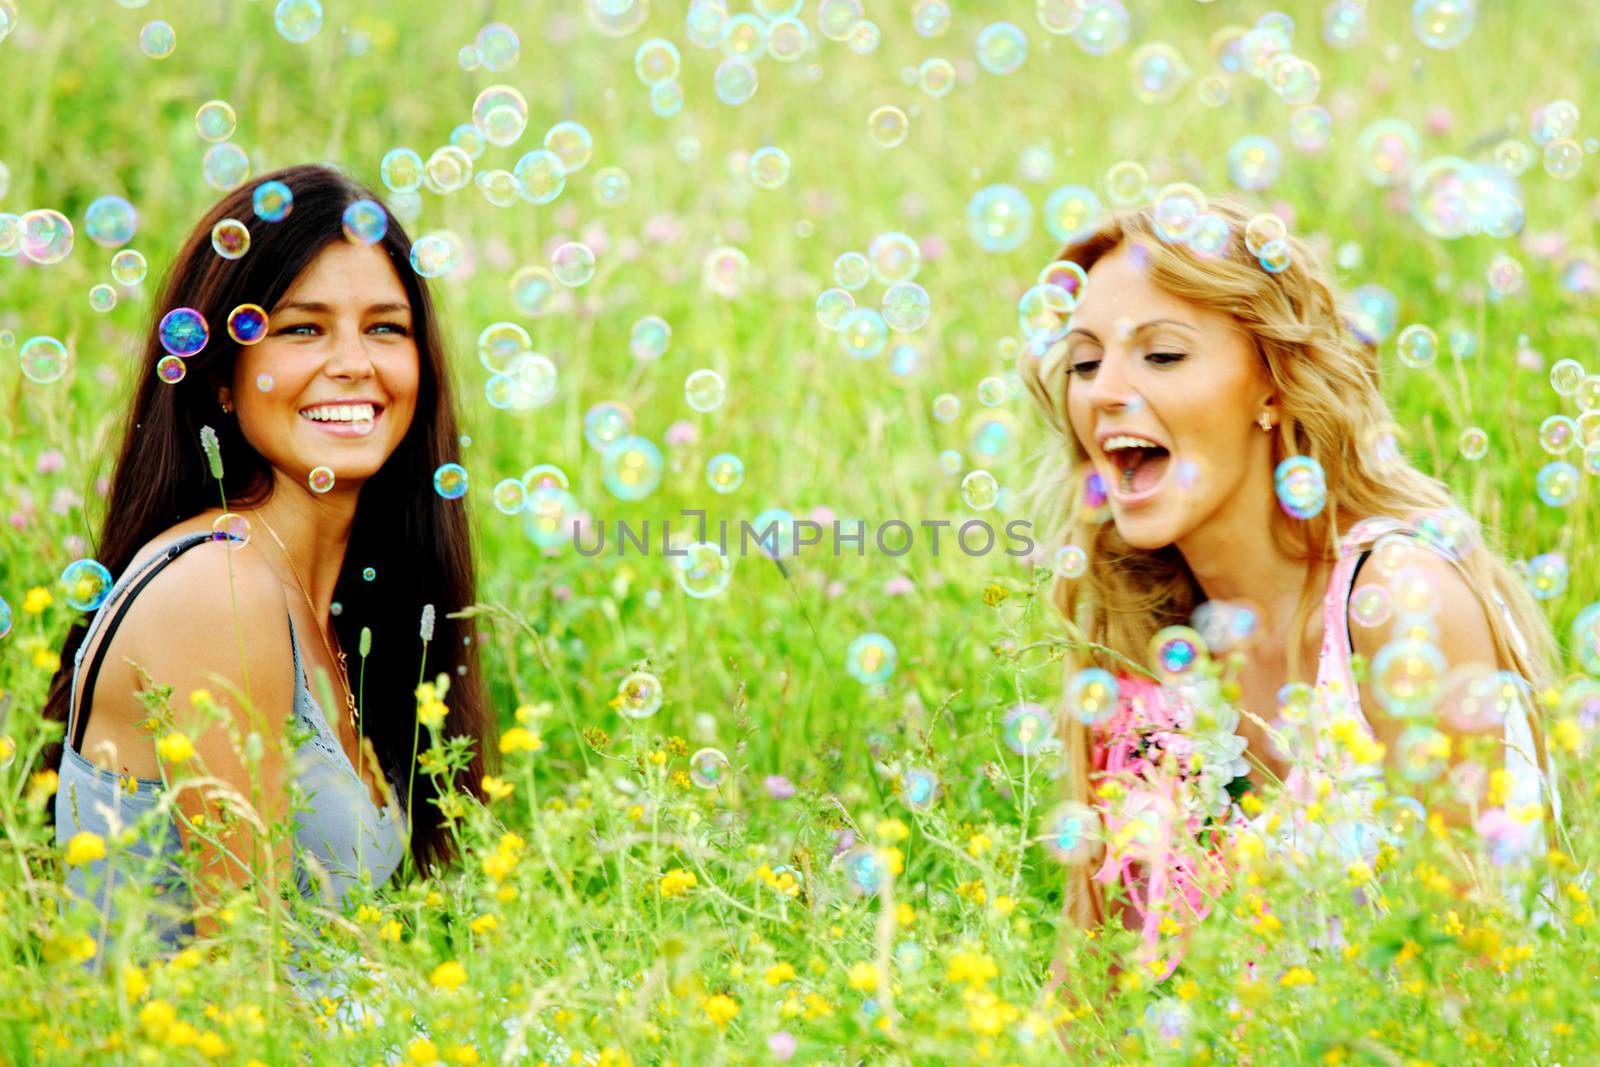 Girlfriends on summer grass by Yellowj